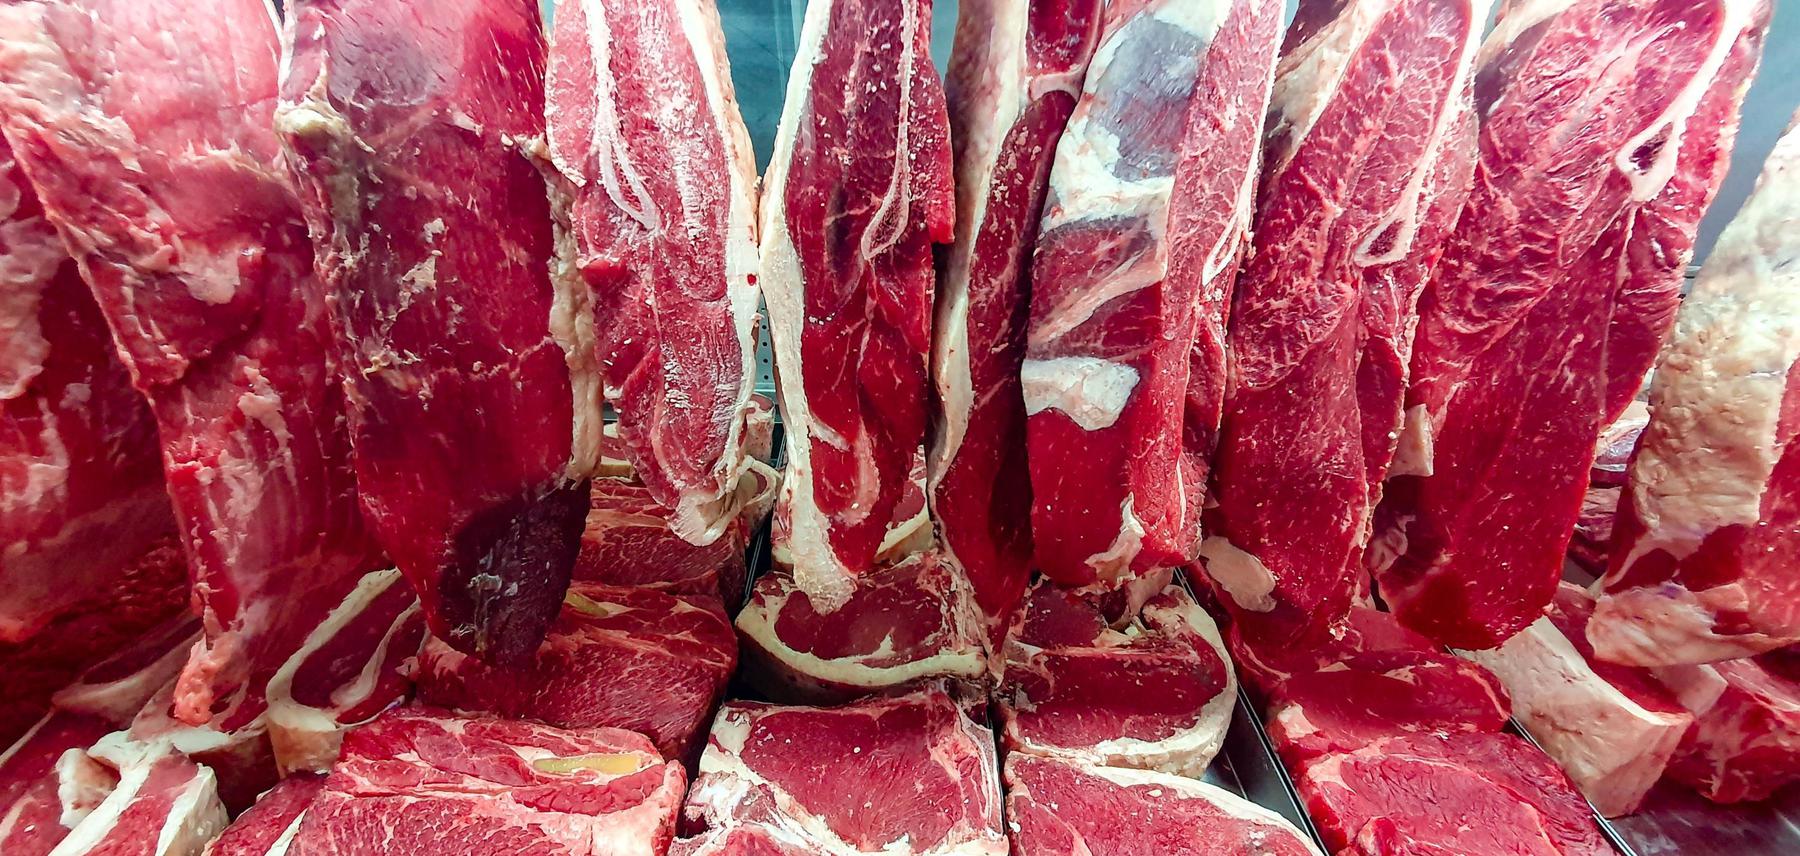 Governo diz que China derrubou embargo às exportações de carne bovina brasileira - Eduardo Matysiak/Futura Press/Folhapress